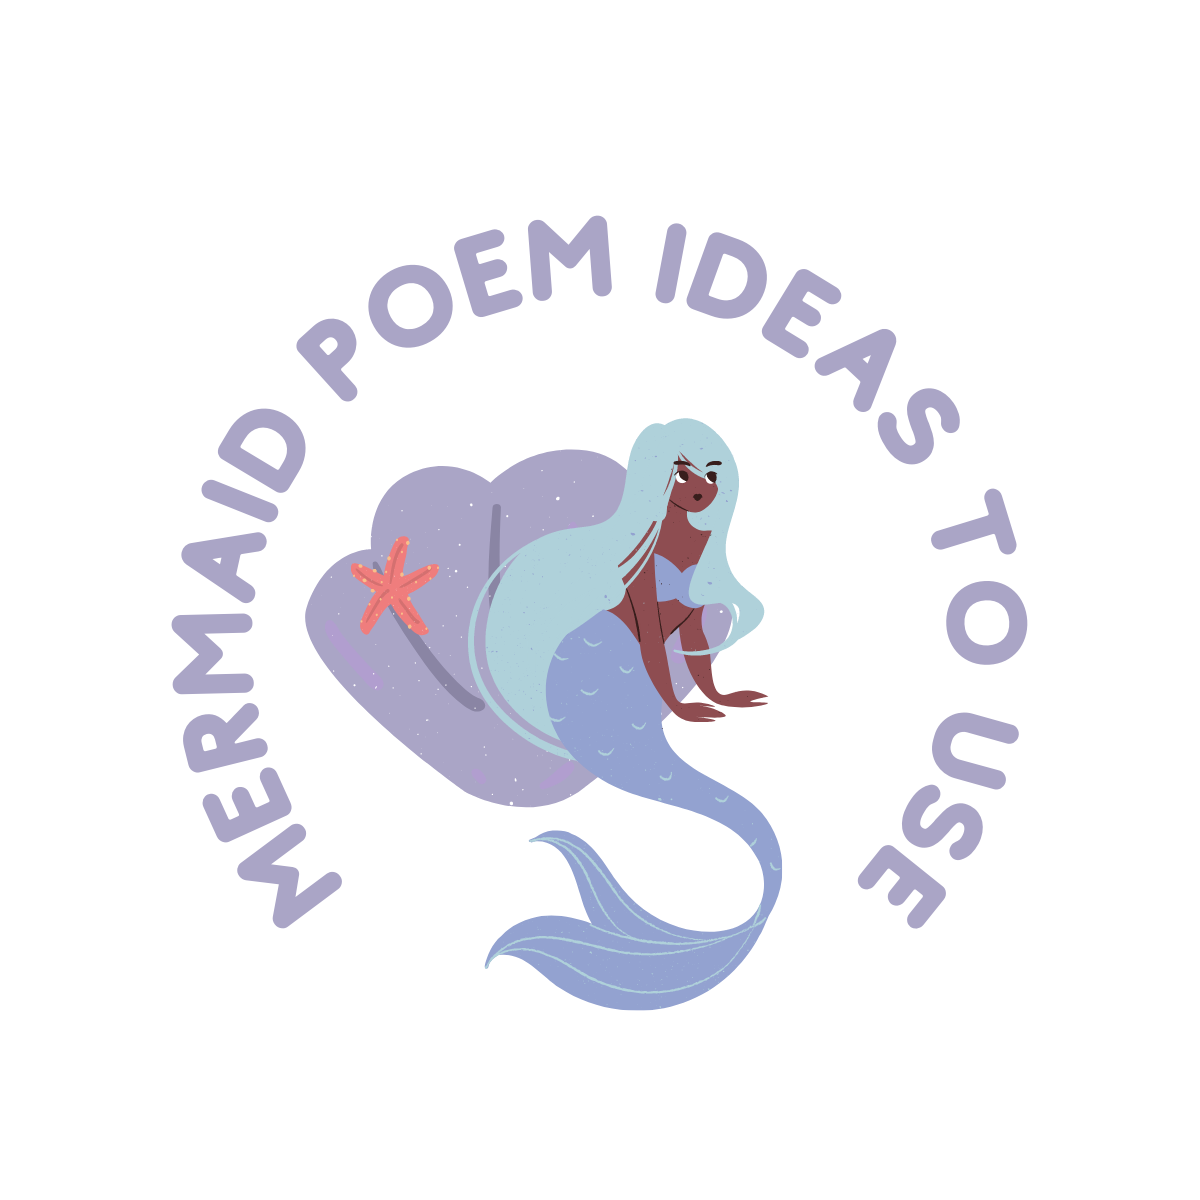 mermaid poems header